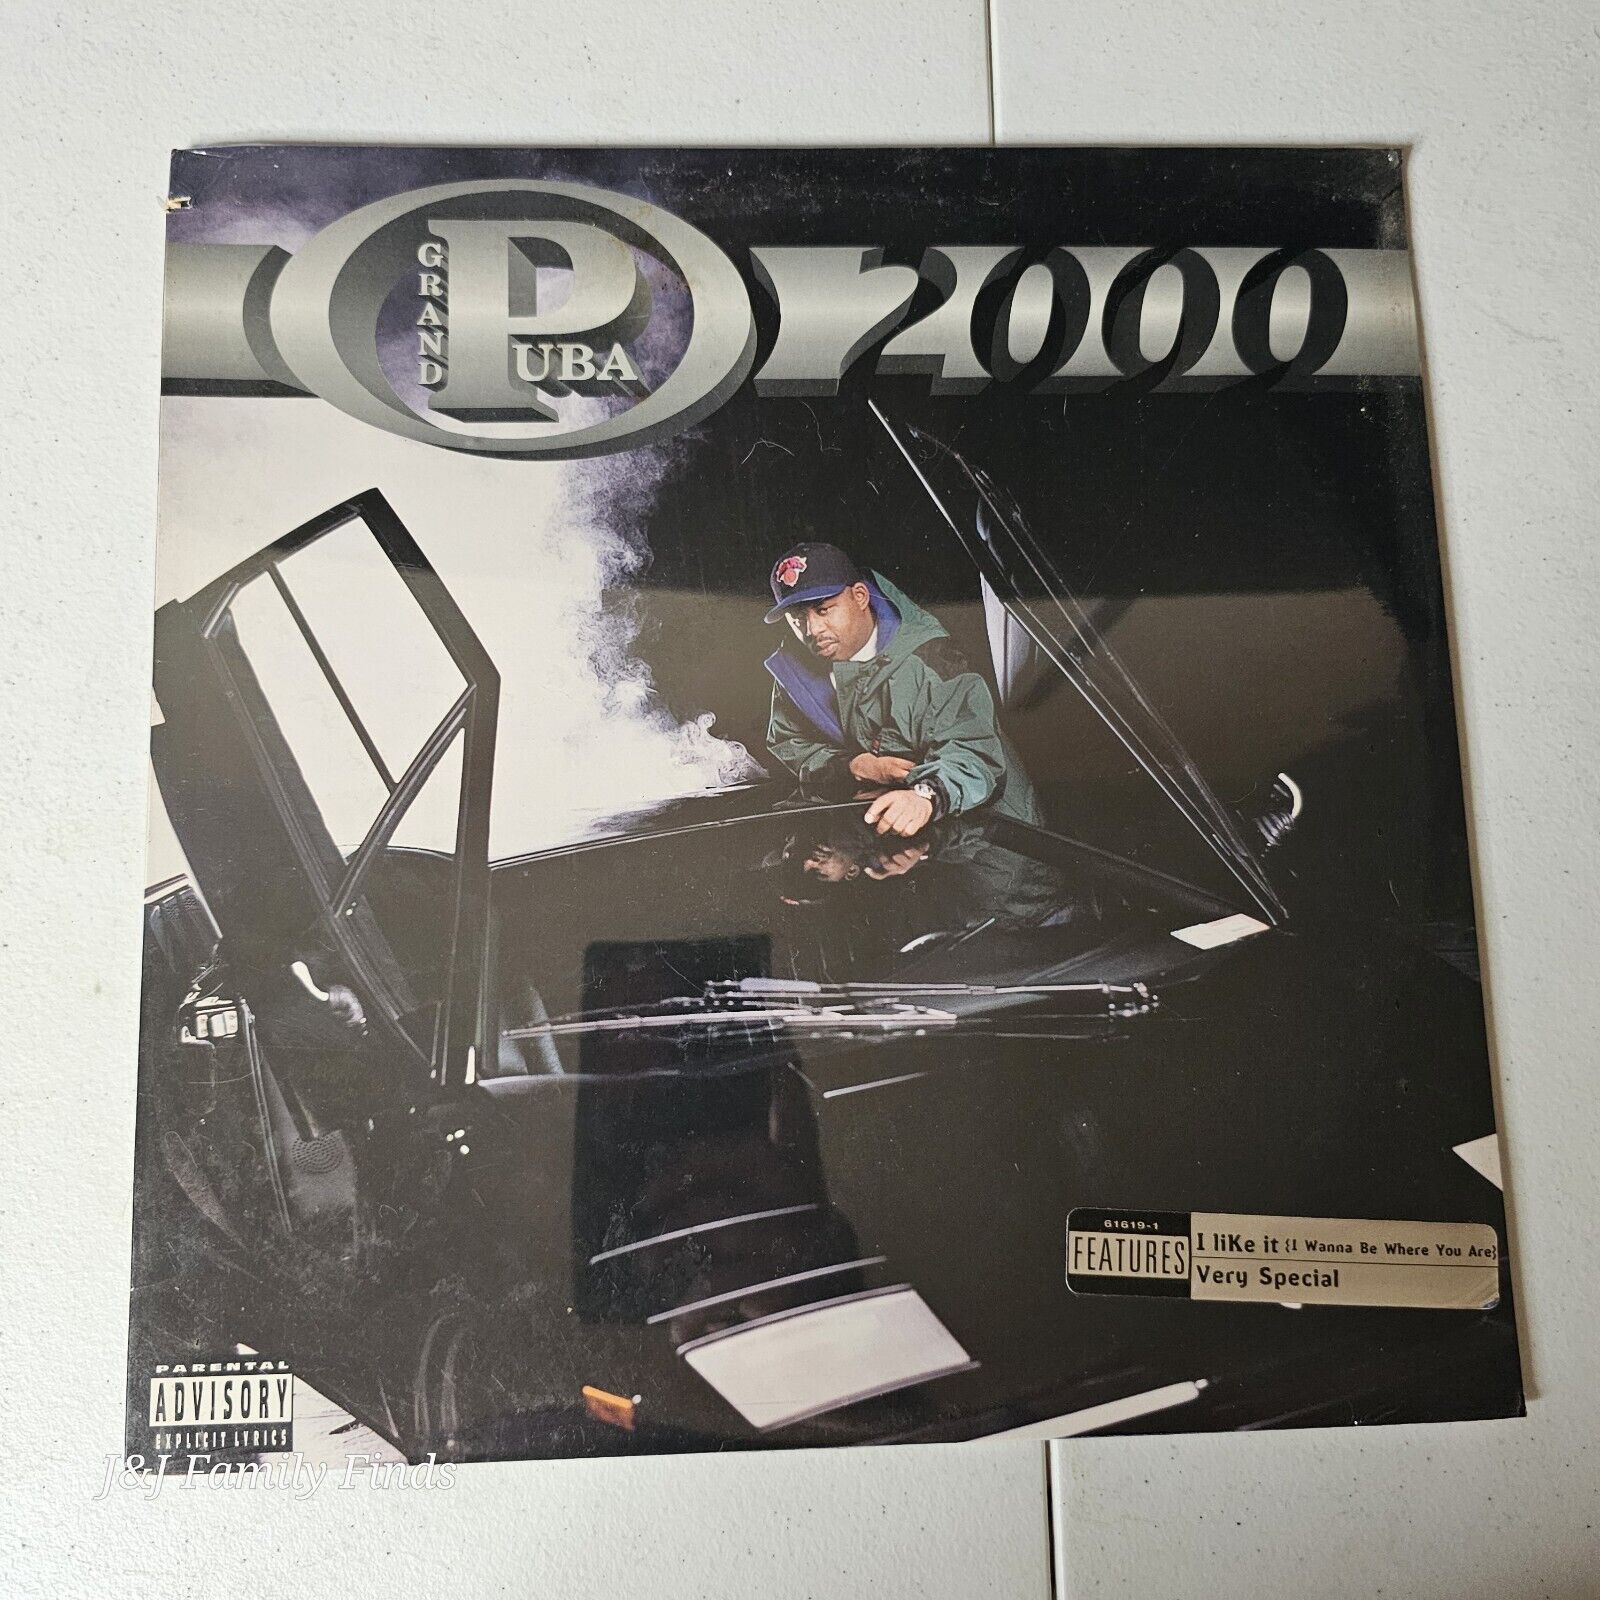 Grand Puba - 2000 - NEW Sealed Vinyl LP Album 61619-1